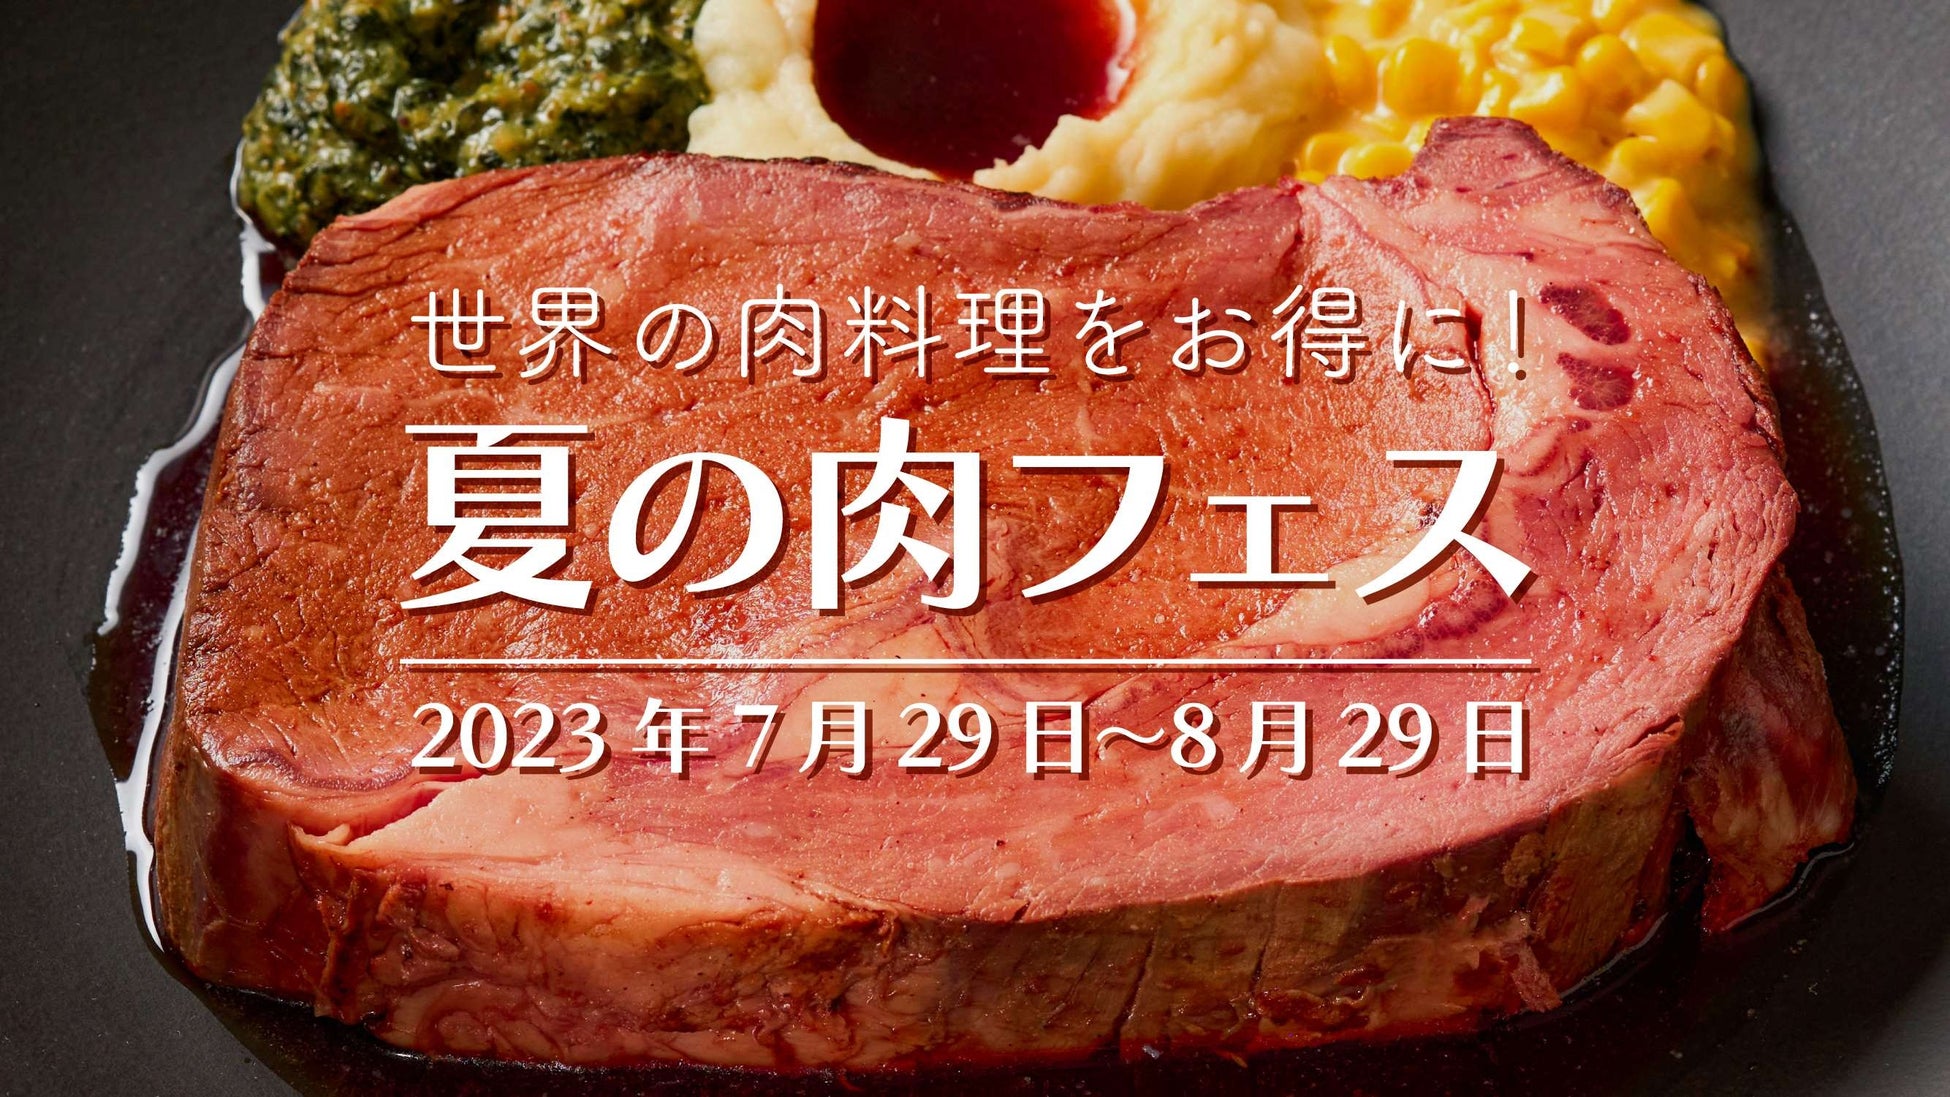 贈ることで北海道の産業支援・文化継承に。「NIPPON LOCAL FOOD GIFT」が世界初どらやき専門カタログギフト「どらやきギフト」をリリース